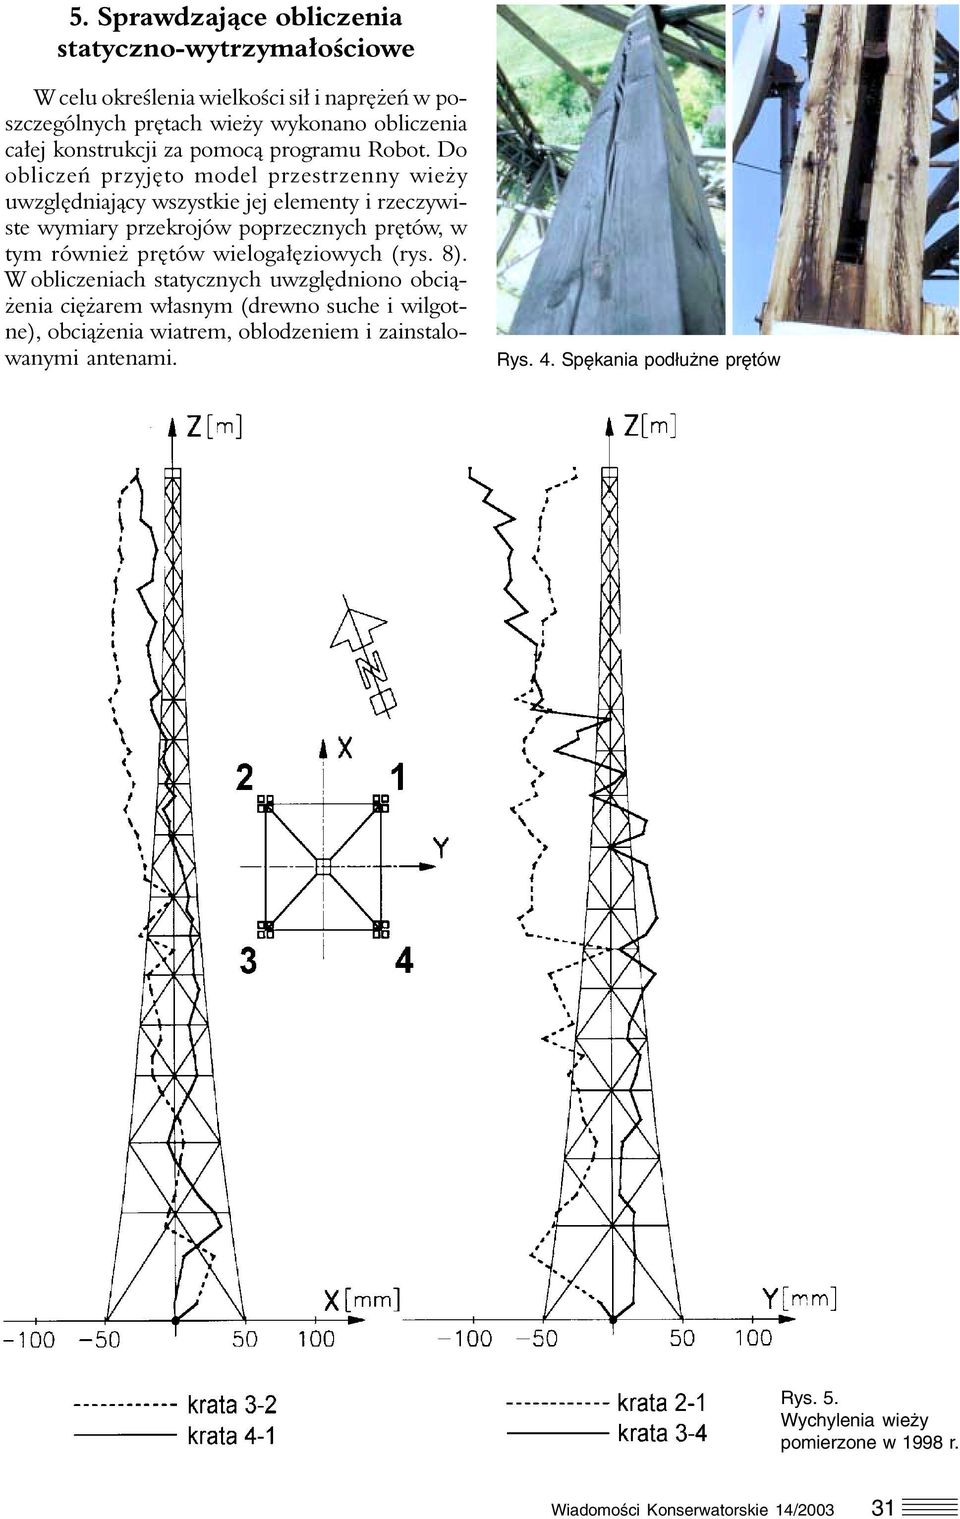 Do obliczeń przyjęto model przestrzenny wieży uwzględniający wszystkie jej elementy i rzeczywiste wymiary przekrojów poprzecznych prętów, w tym również prętów